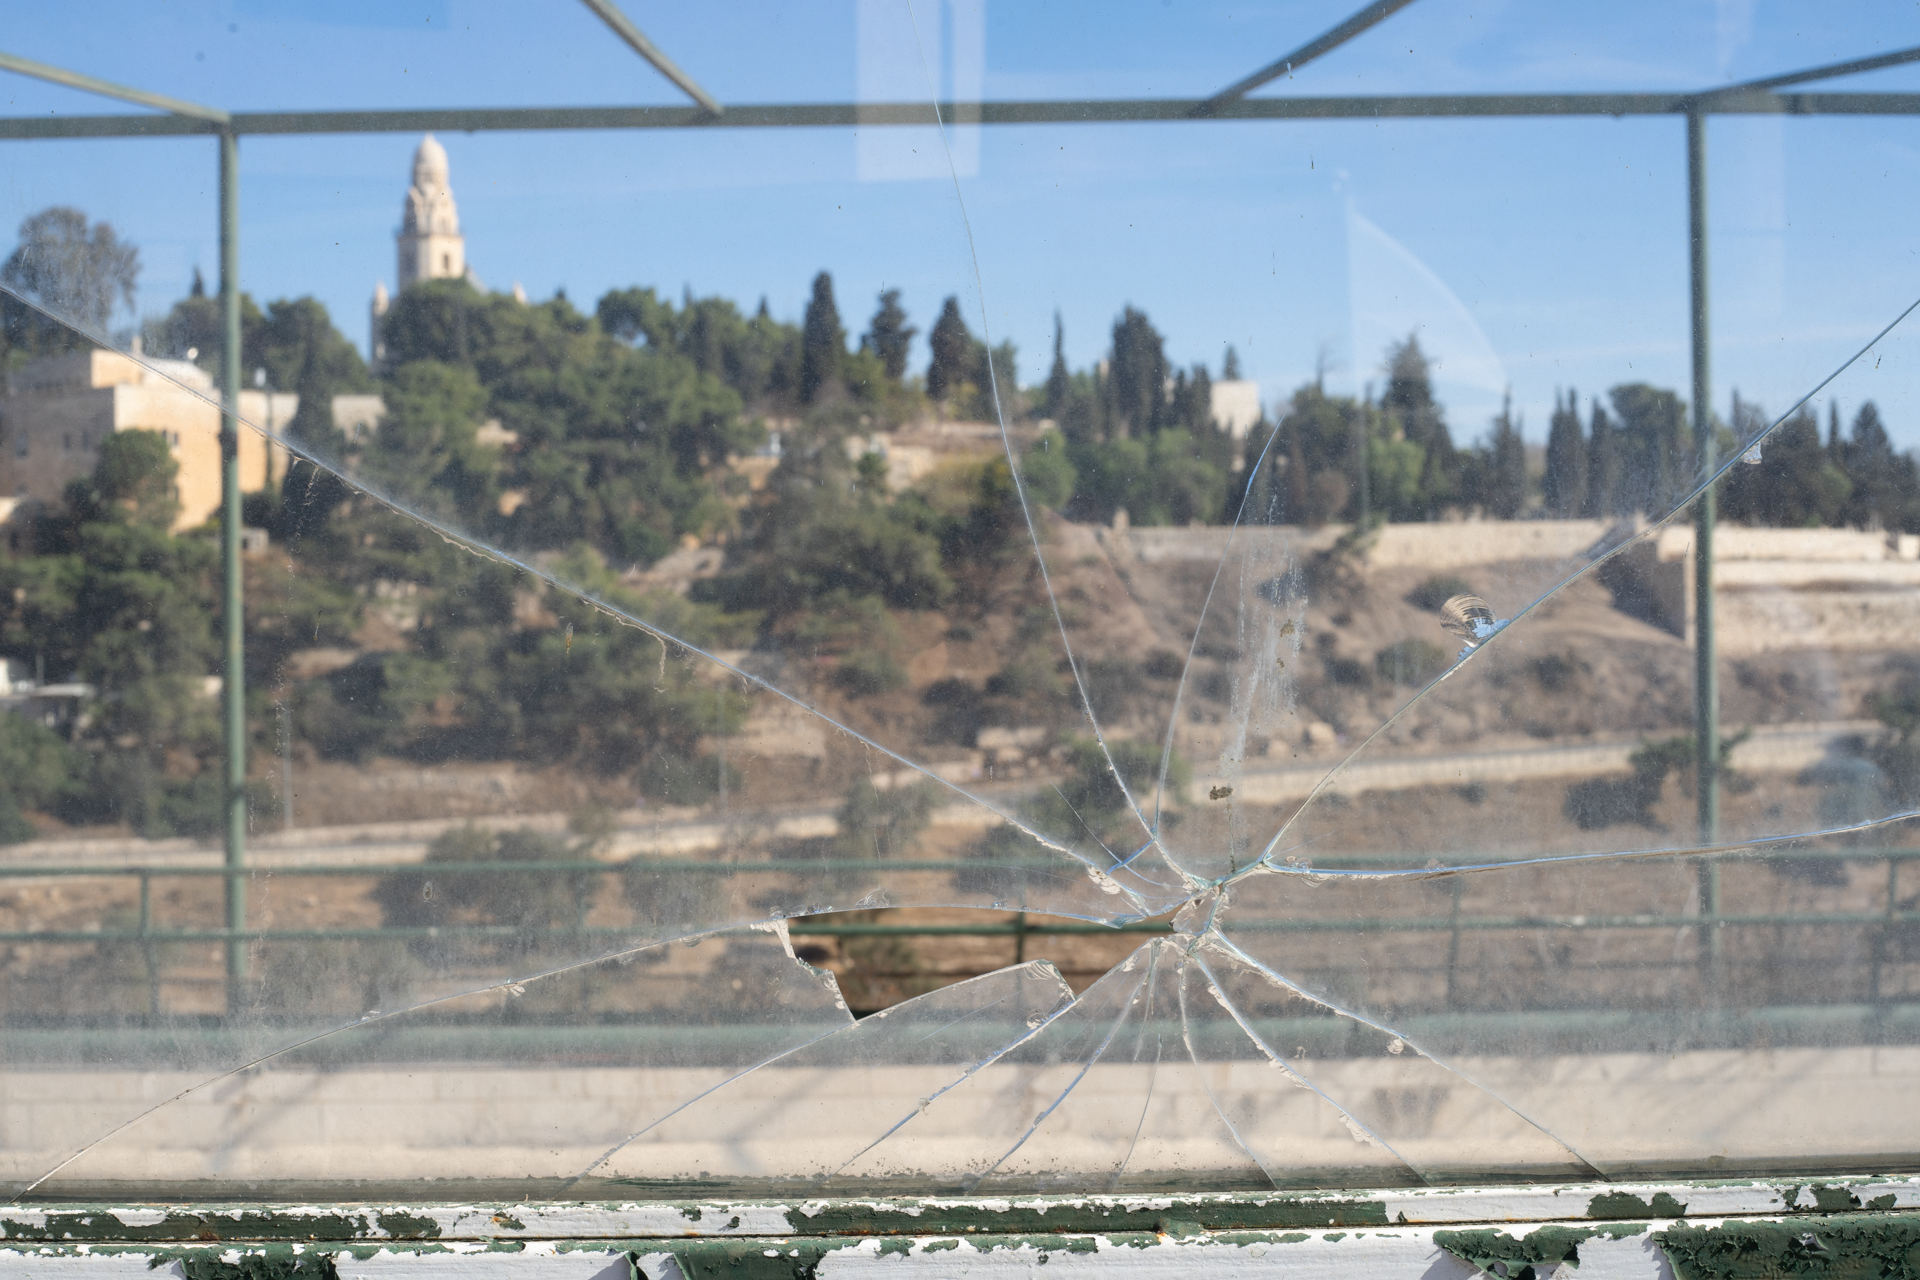 תמונה של חלון זכוכית מנופץ ברקע של ירושלים, מתוך התערוכה פוטוריזם ירושלמי - עבודות סטודנטים במחלקה לצילום